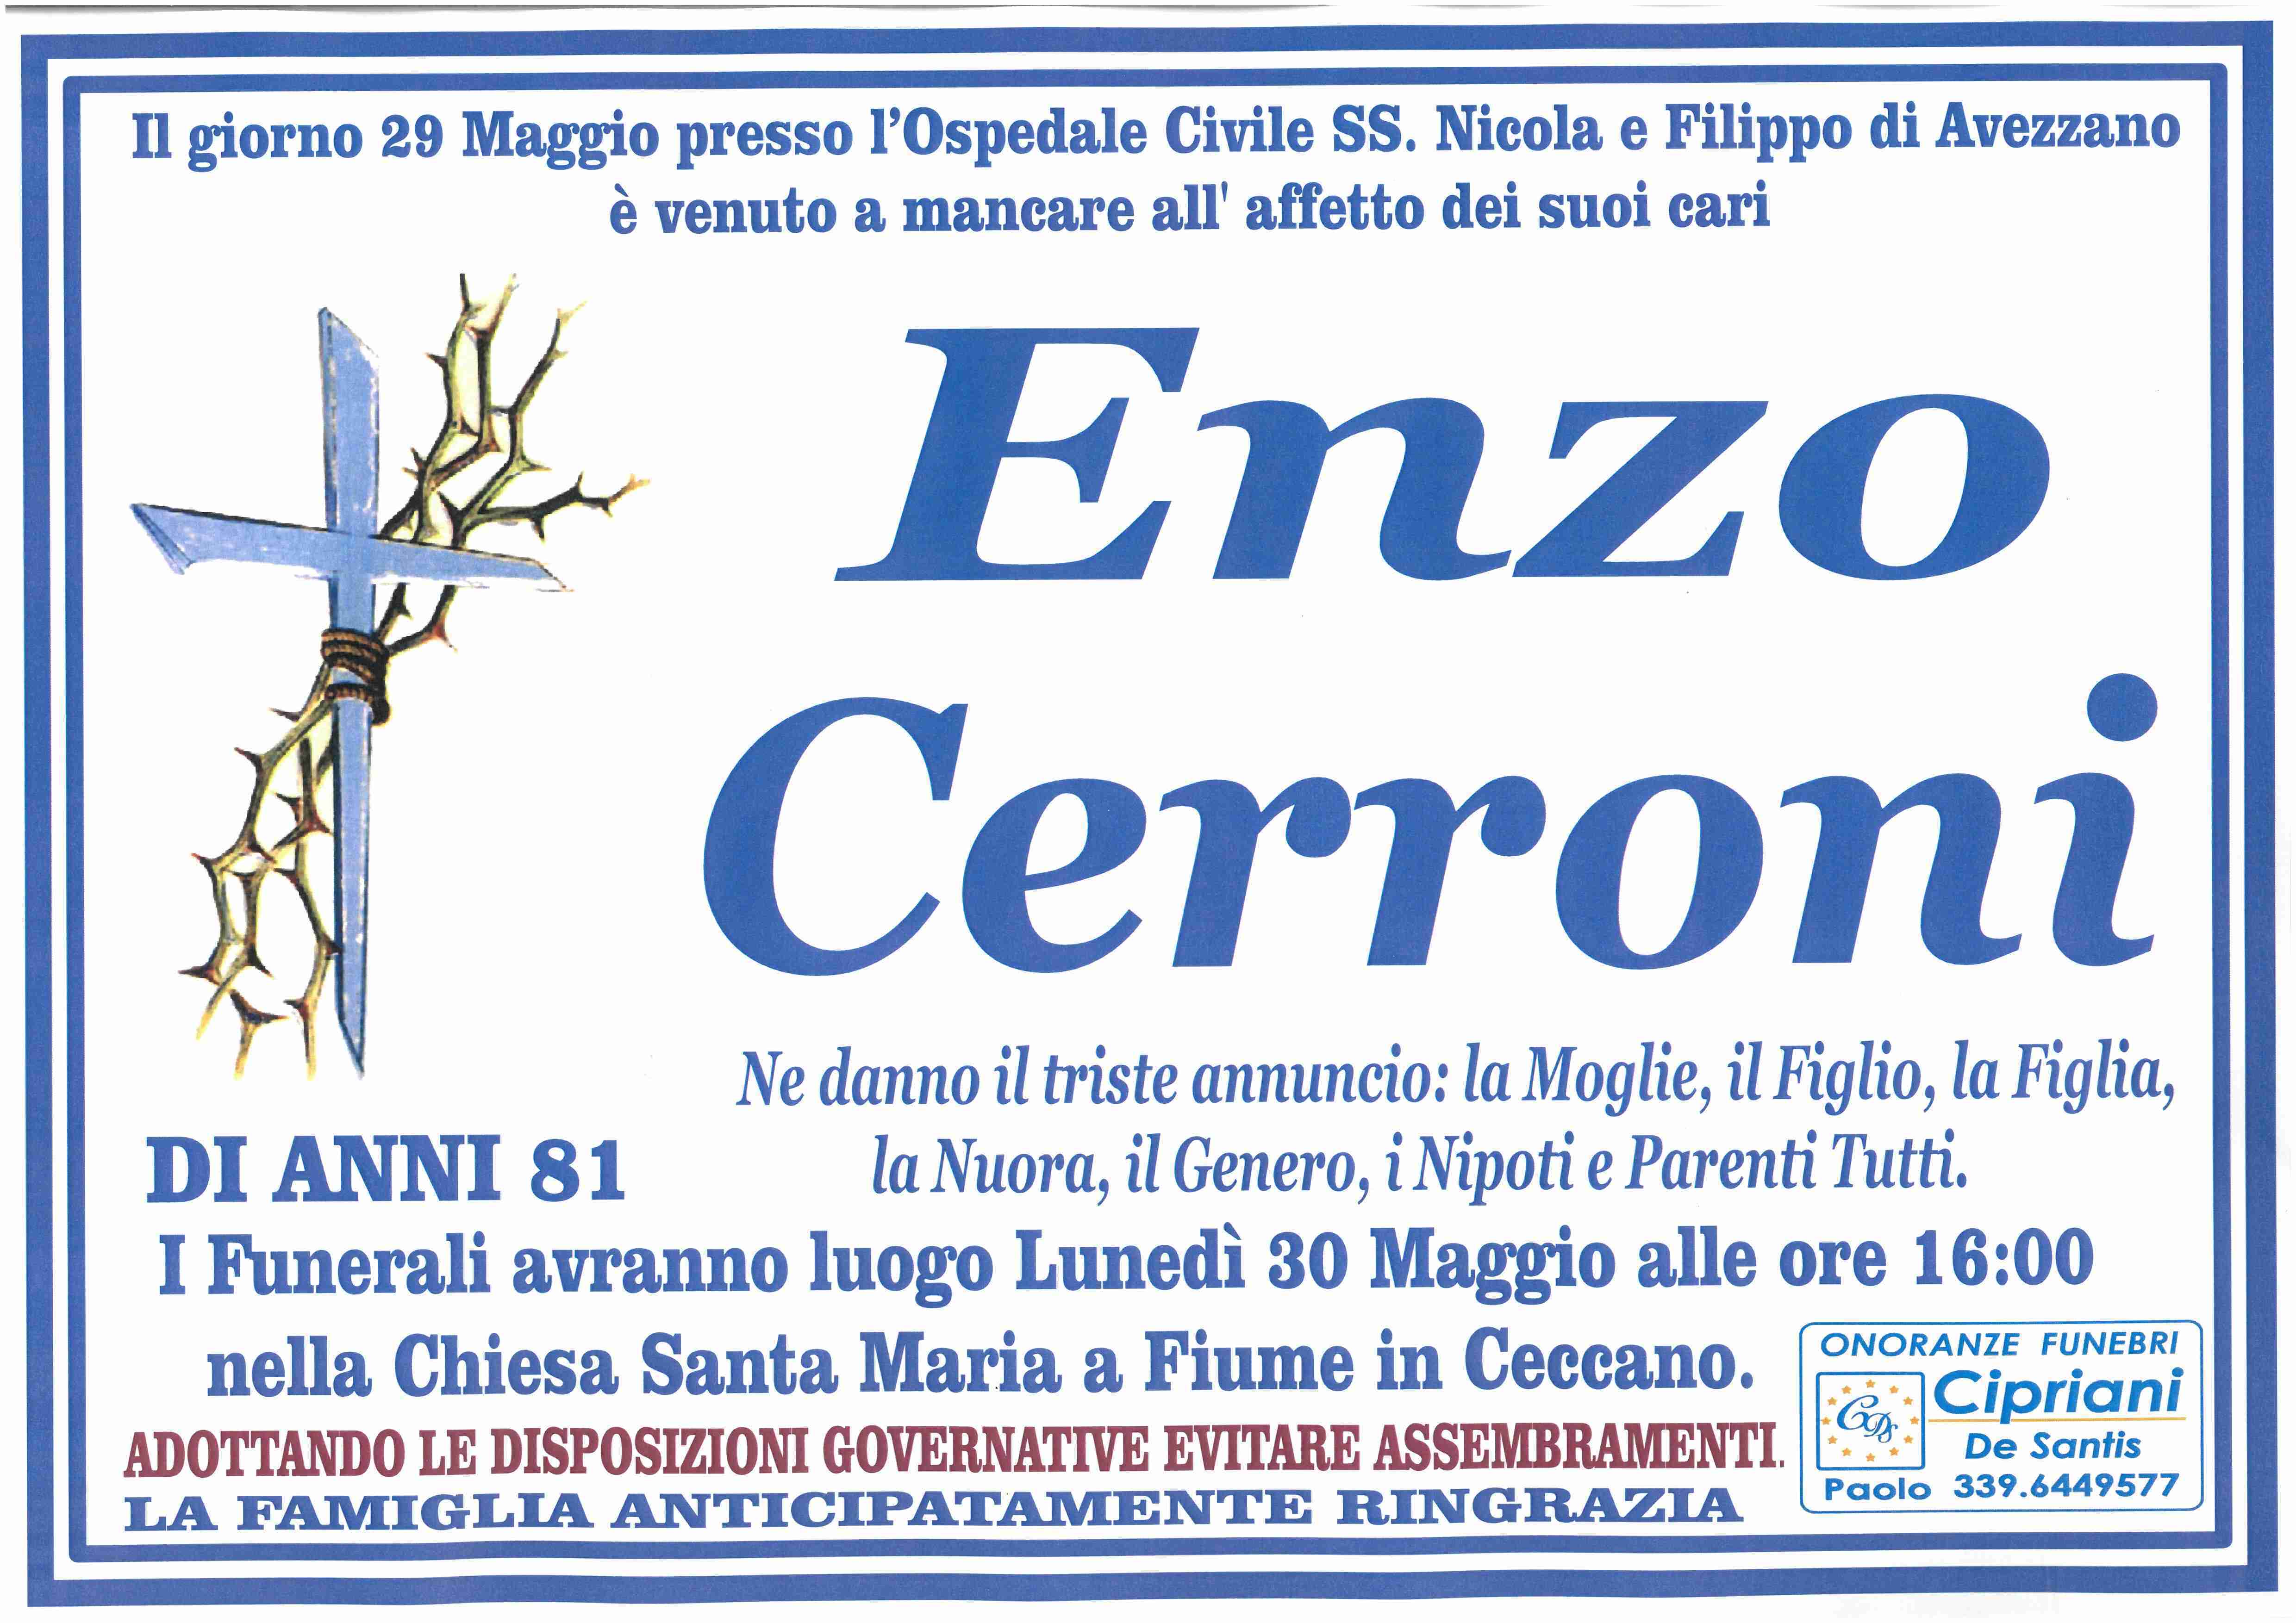 Enzo Cerroni